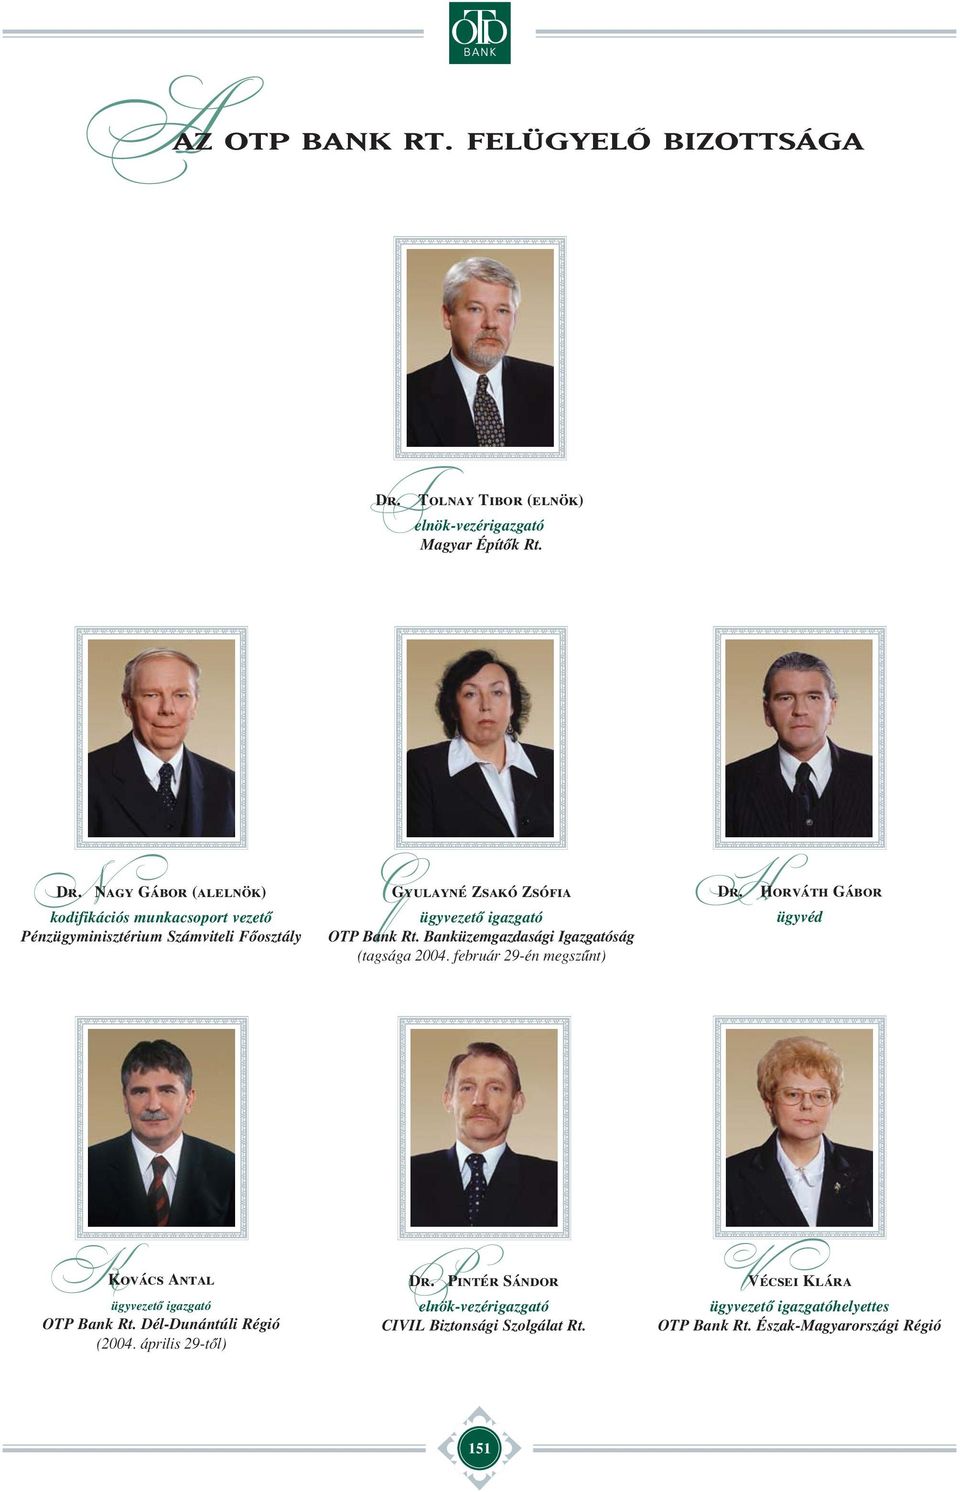 igazgató Banküzemgazdasági Igazgatóság (tagsága 2004. február 29-én megszûnt) HDr.